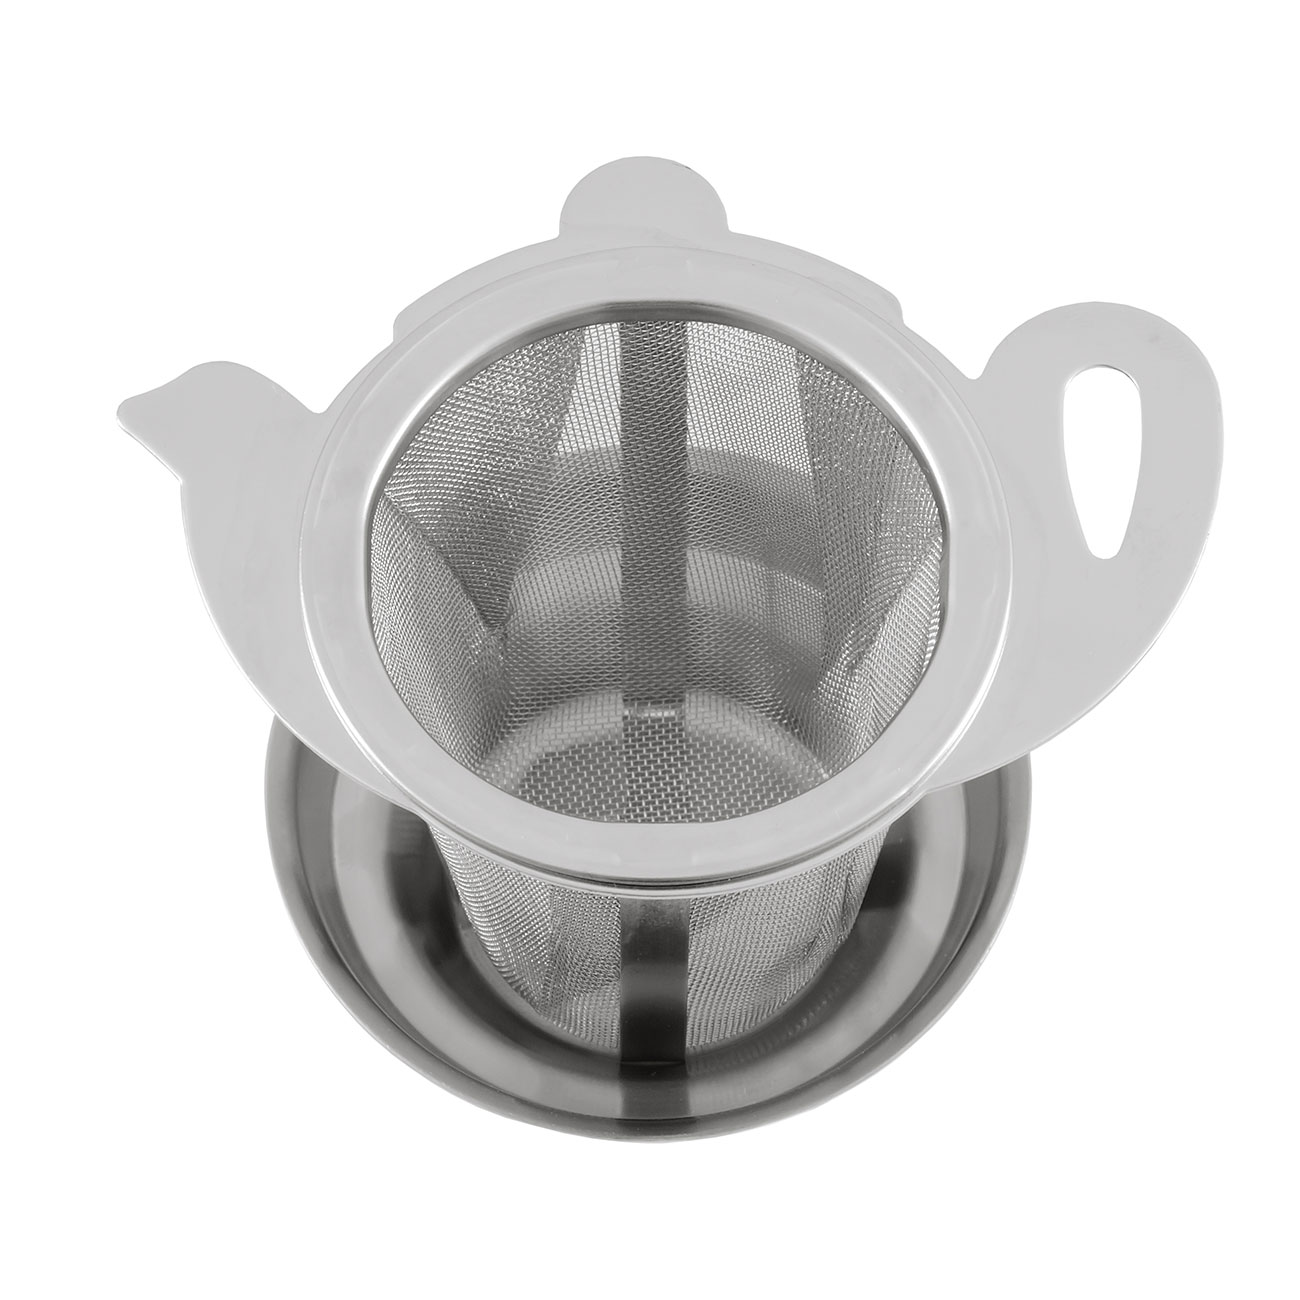 Metallteesieb „Teekanne“ mit Abtropfschale.